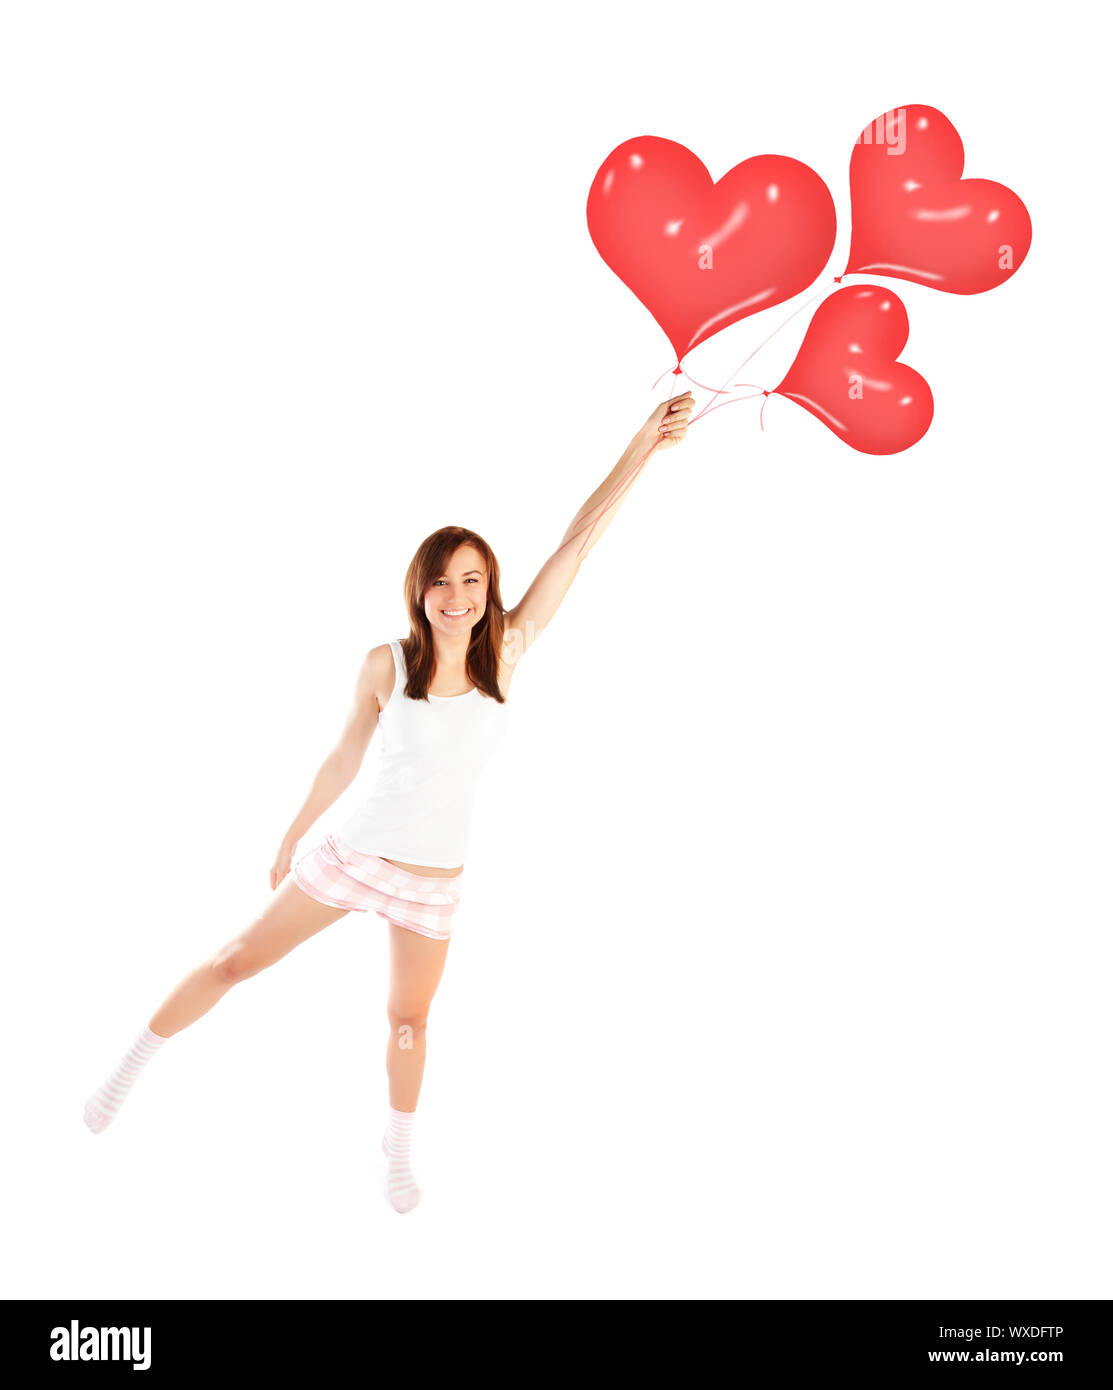 Bild von weiblich zu fliegenden roten herzförmigen Luftballons, lachende Frau auf weißem Hintergrund, Freiheit Lifestyle, Valentinstag, romantische Drea Stockfoto